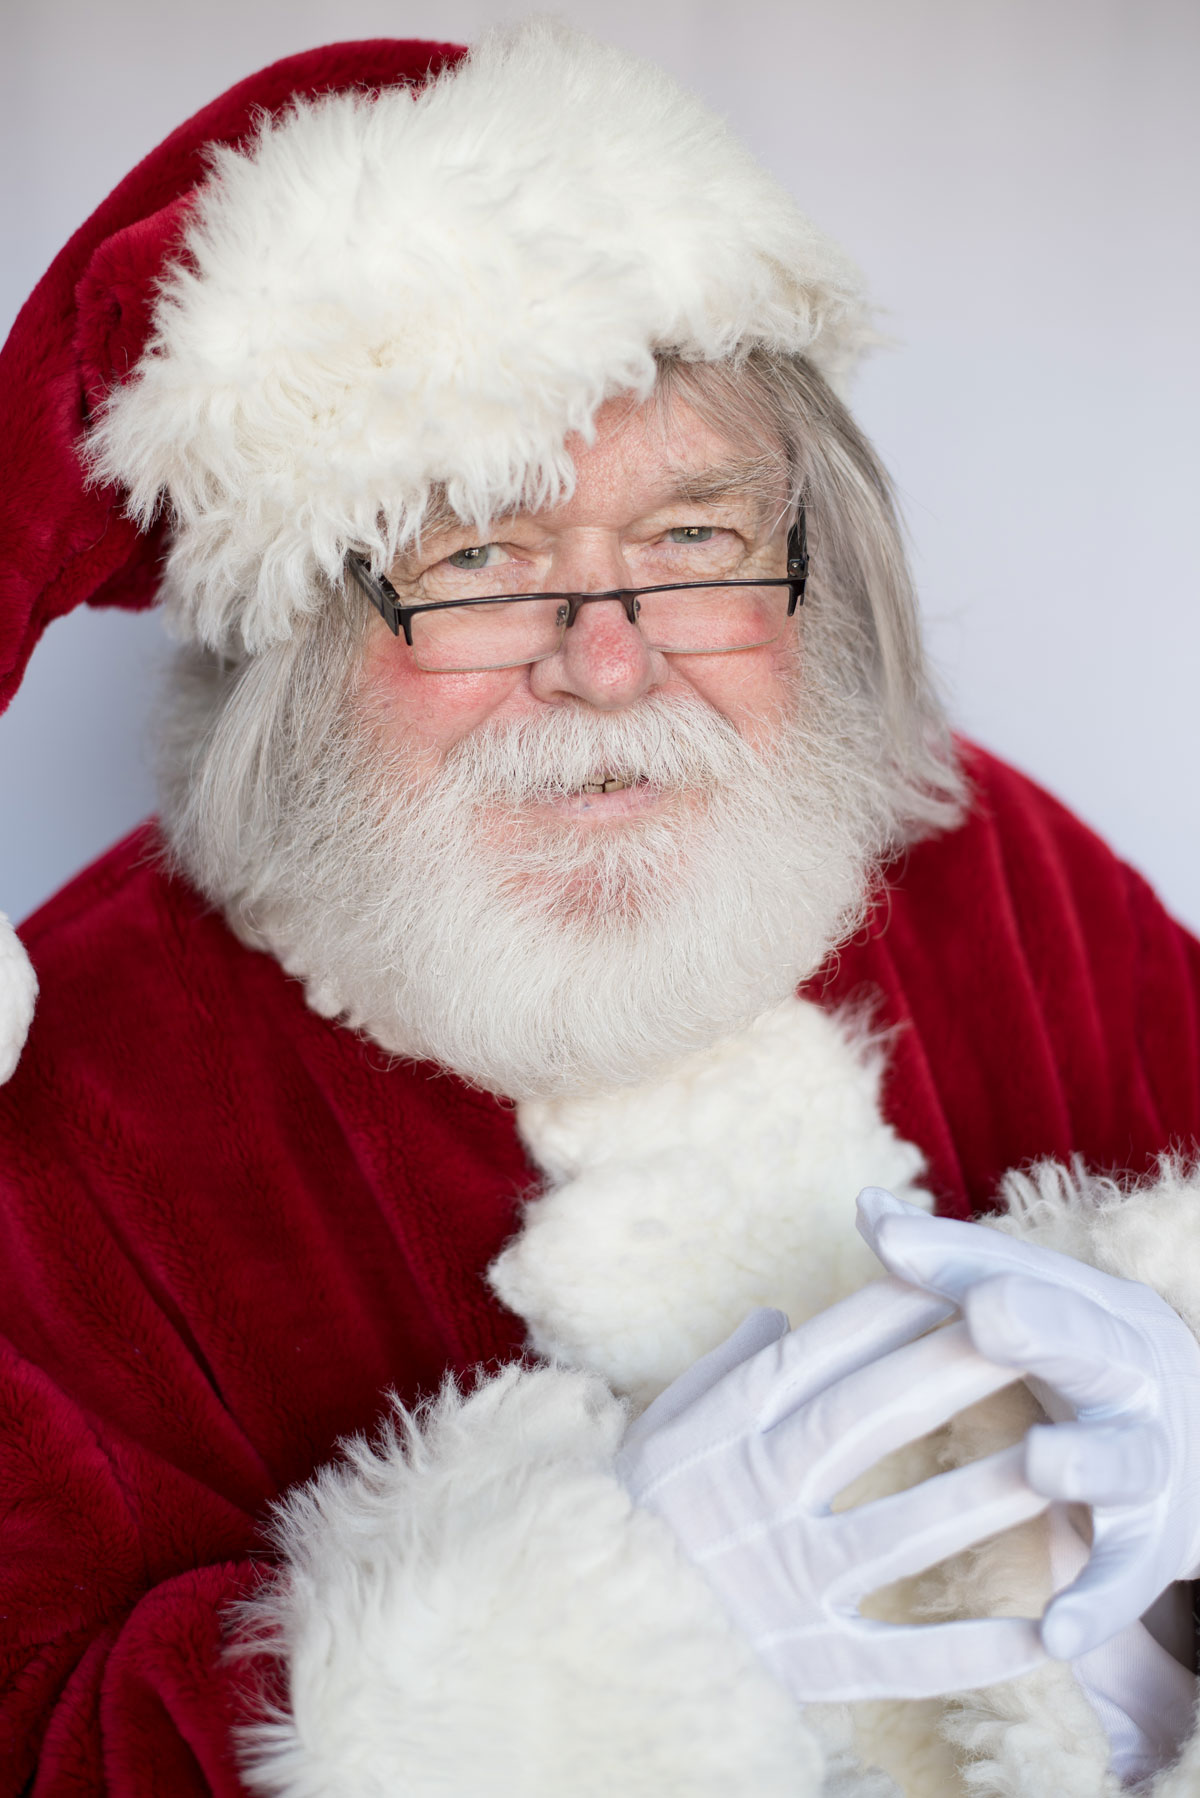 Joe Harkins as Santa